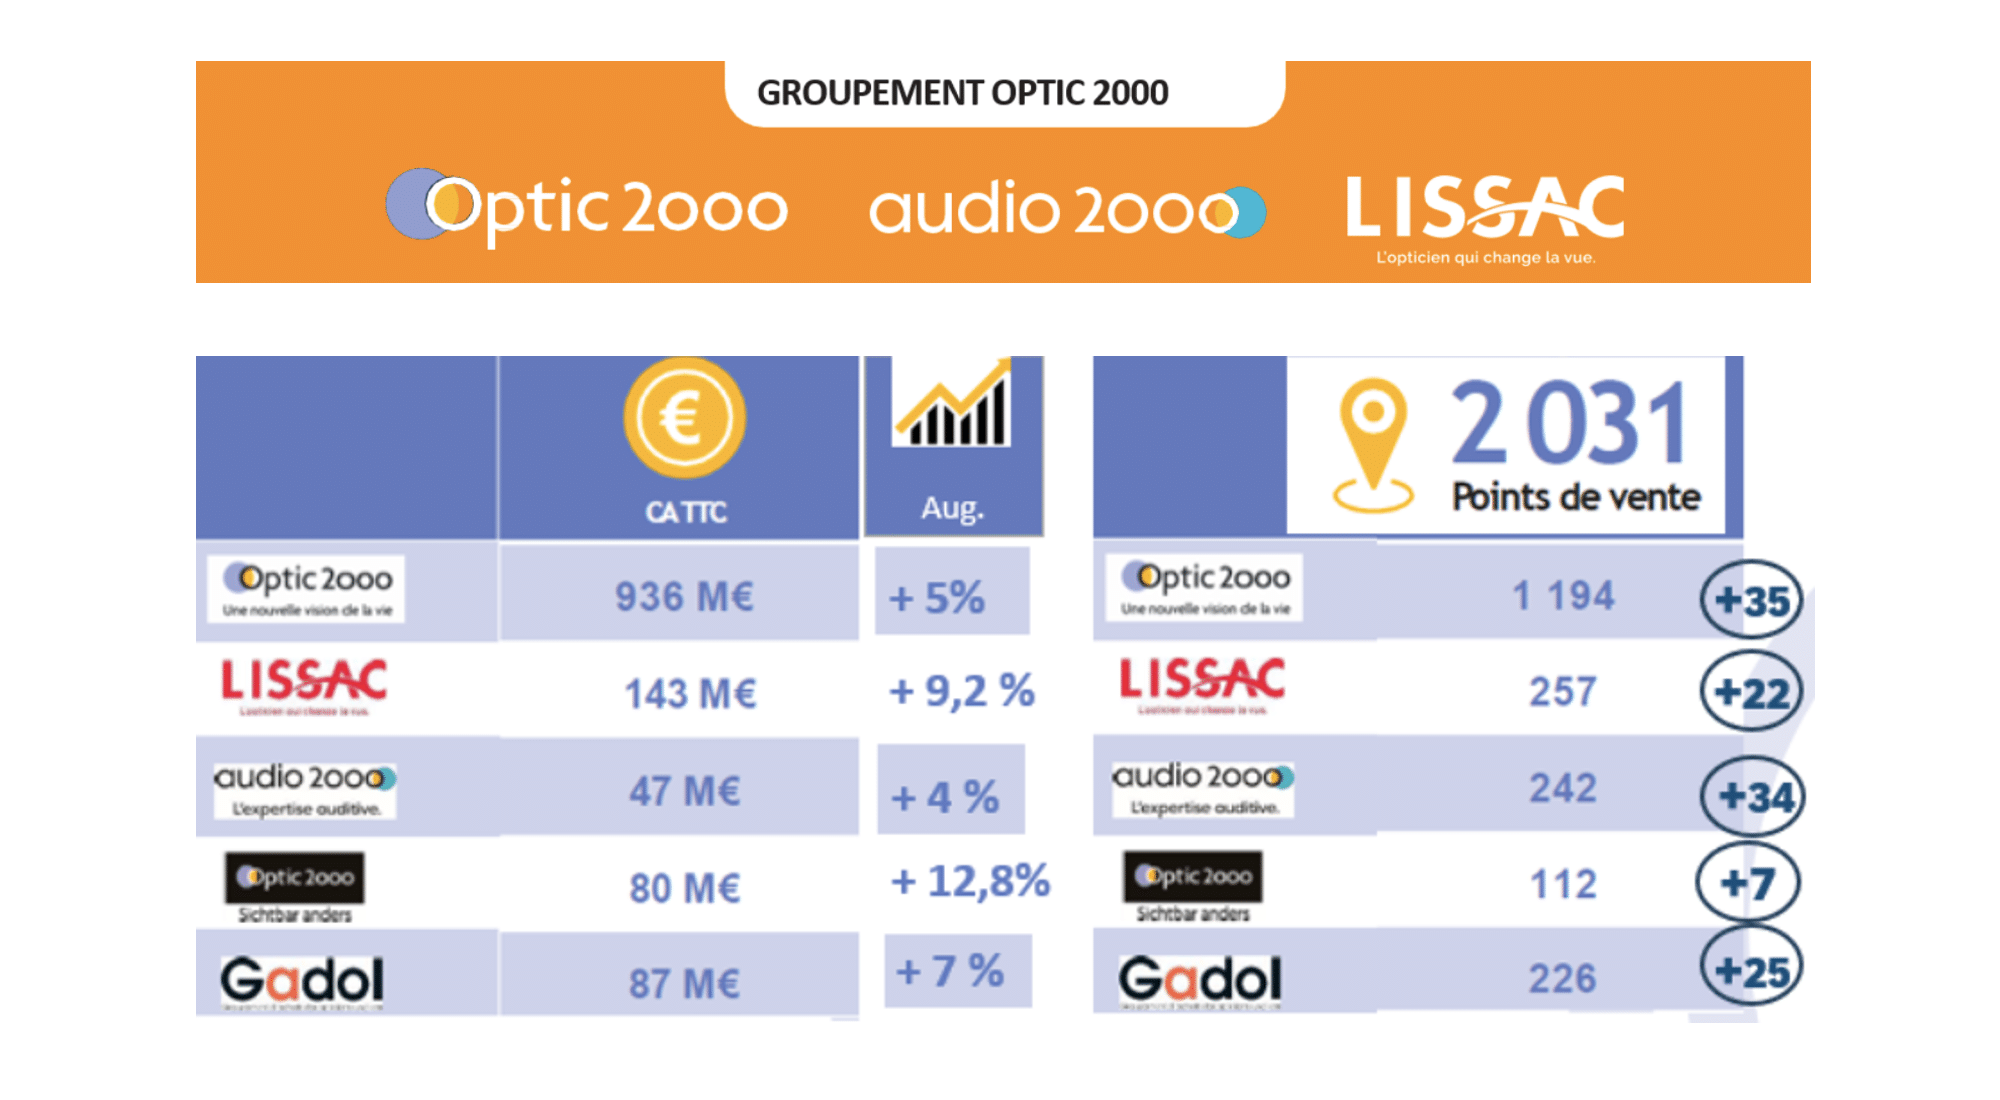 Le groupement Optic 2000 a présenté ses chiffres pour l’année 2023